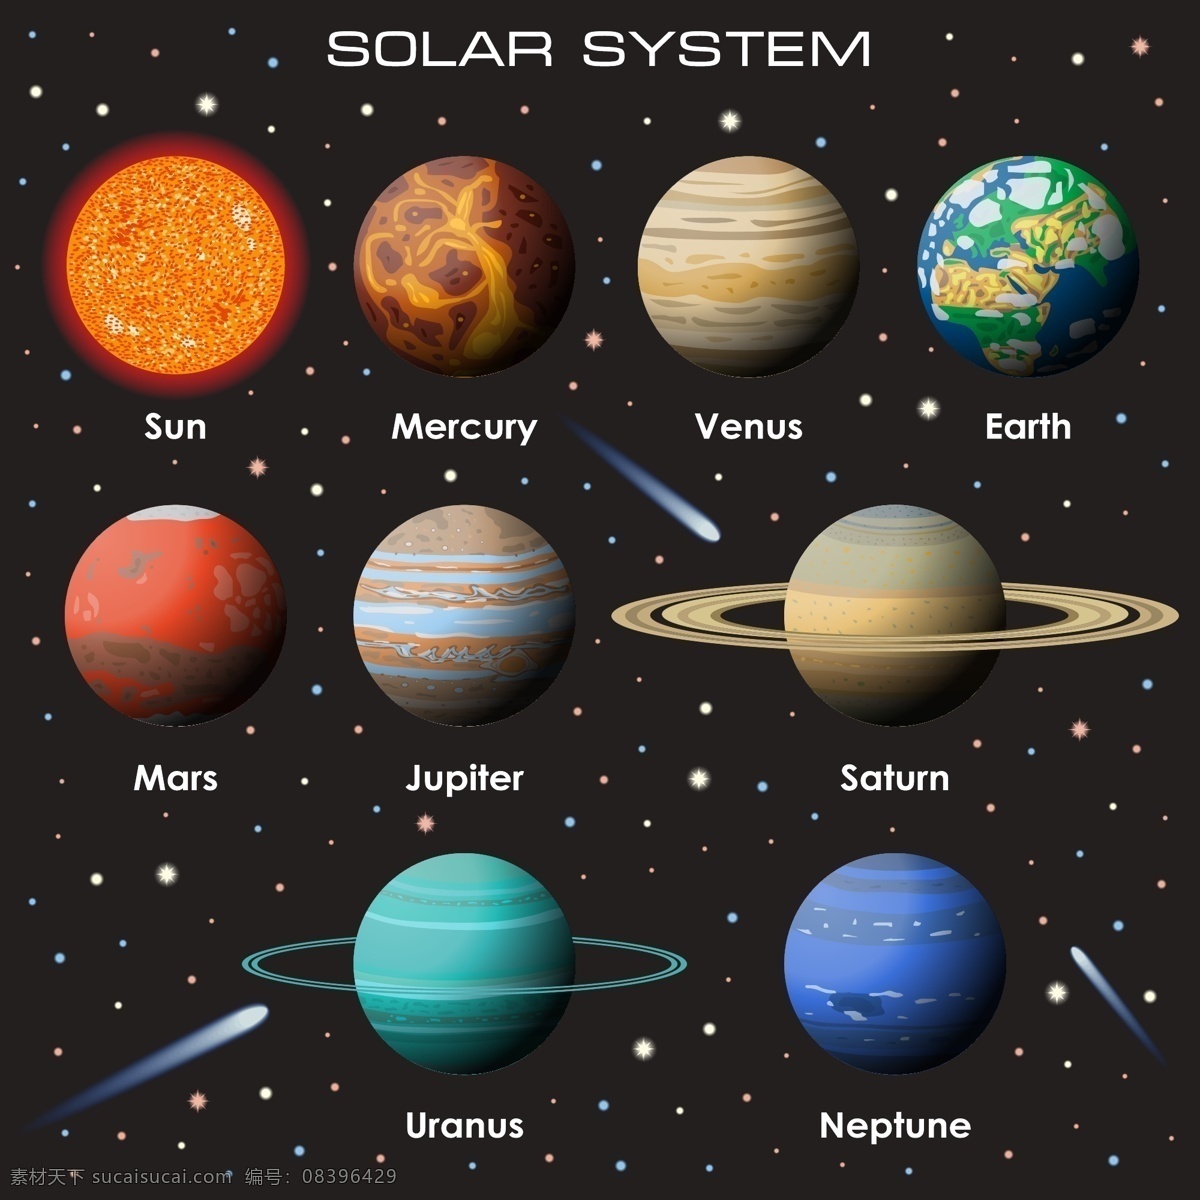 太阳系 行星 主题 矢量素材 矢量图 设计素材 天文 地理 太空 矢量 高清图片